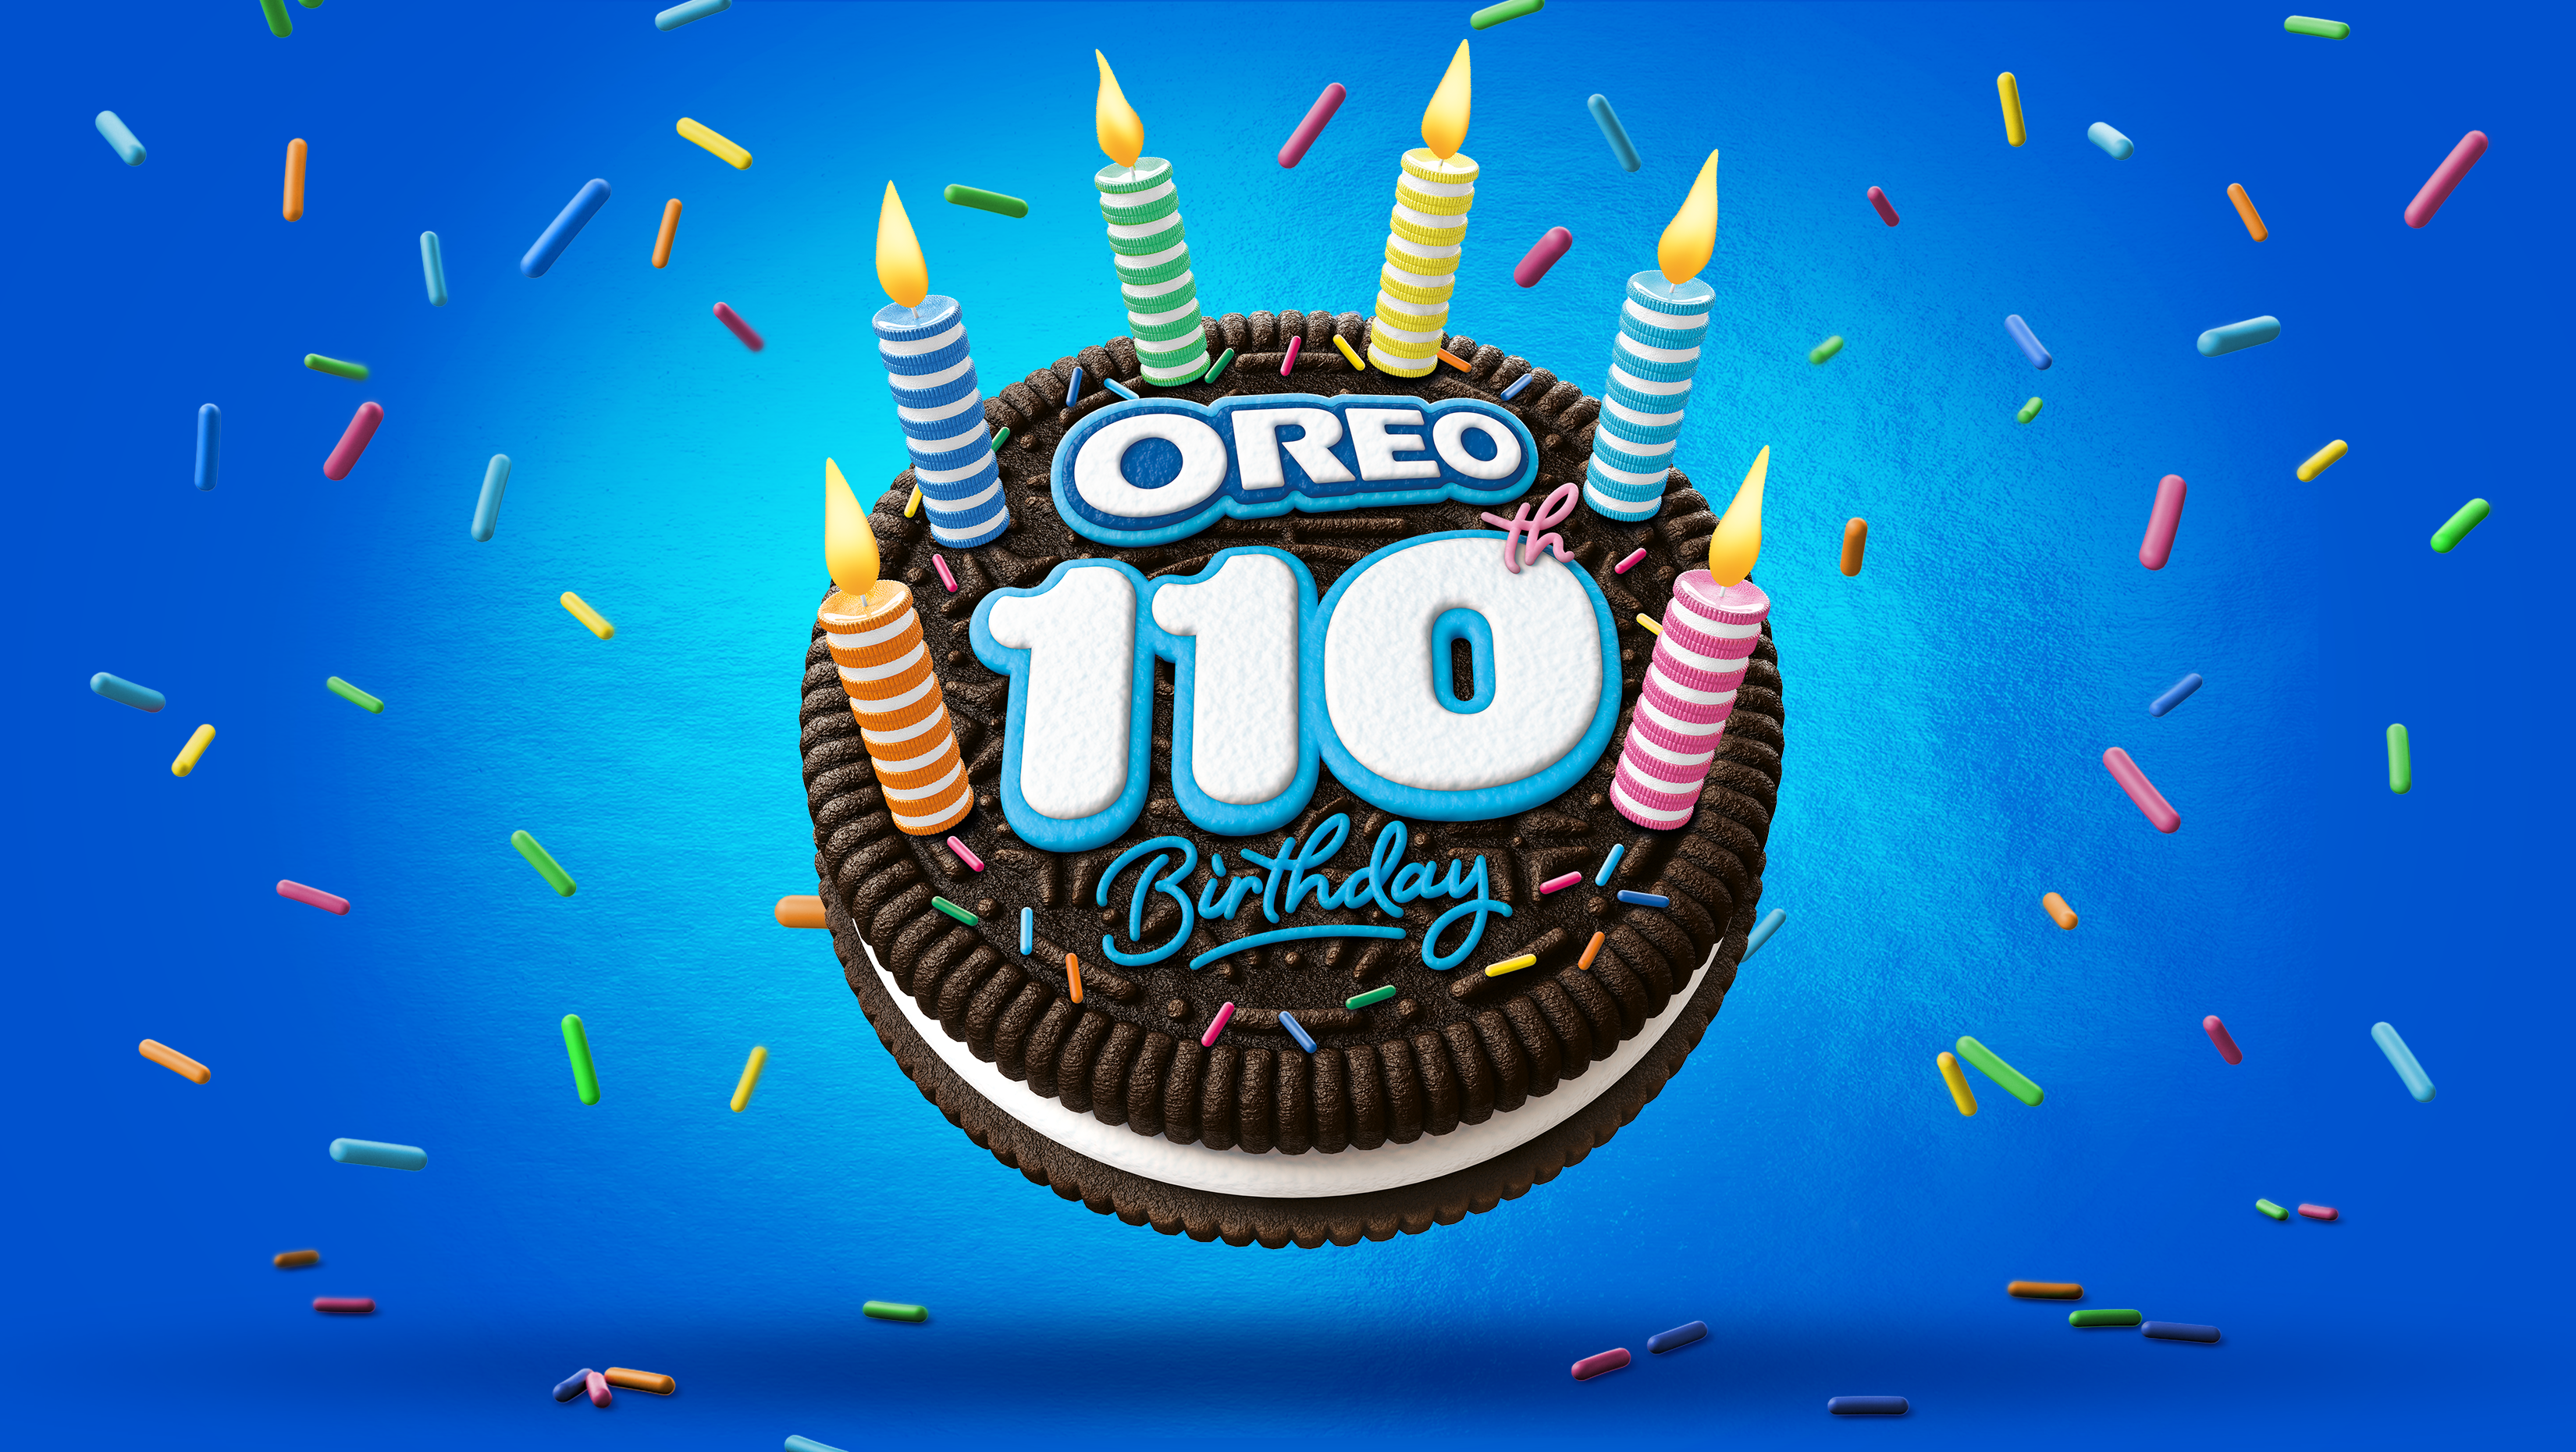 oreo-110th-birthday